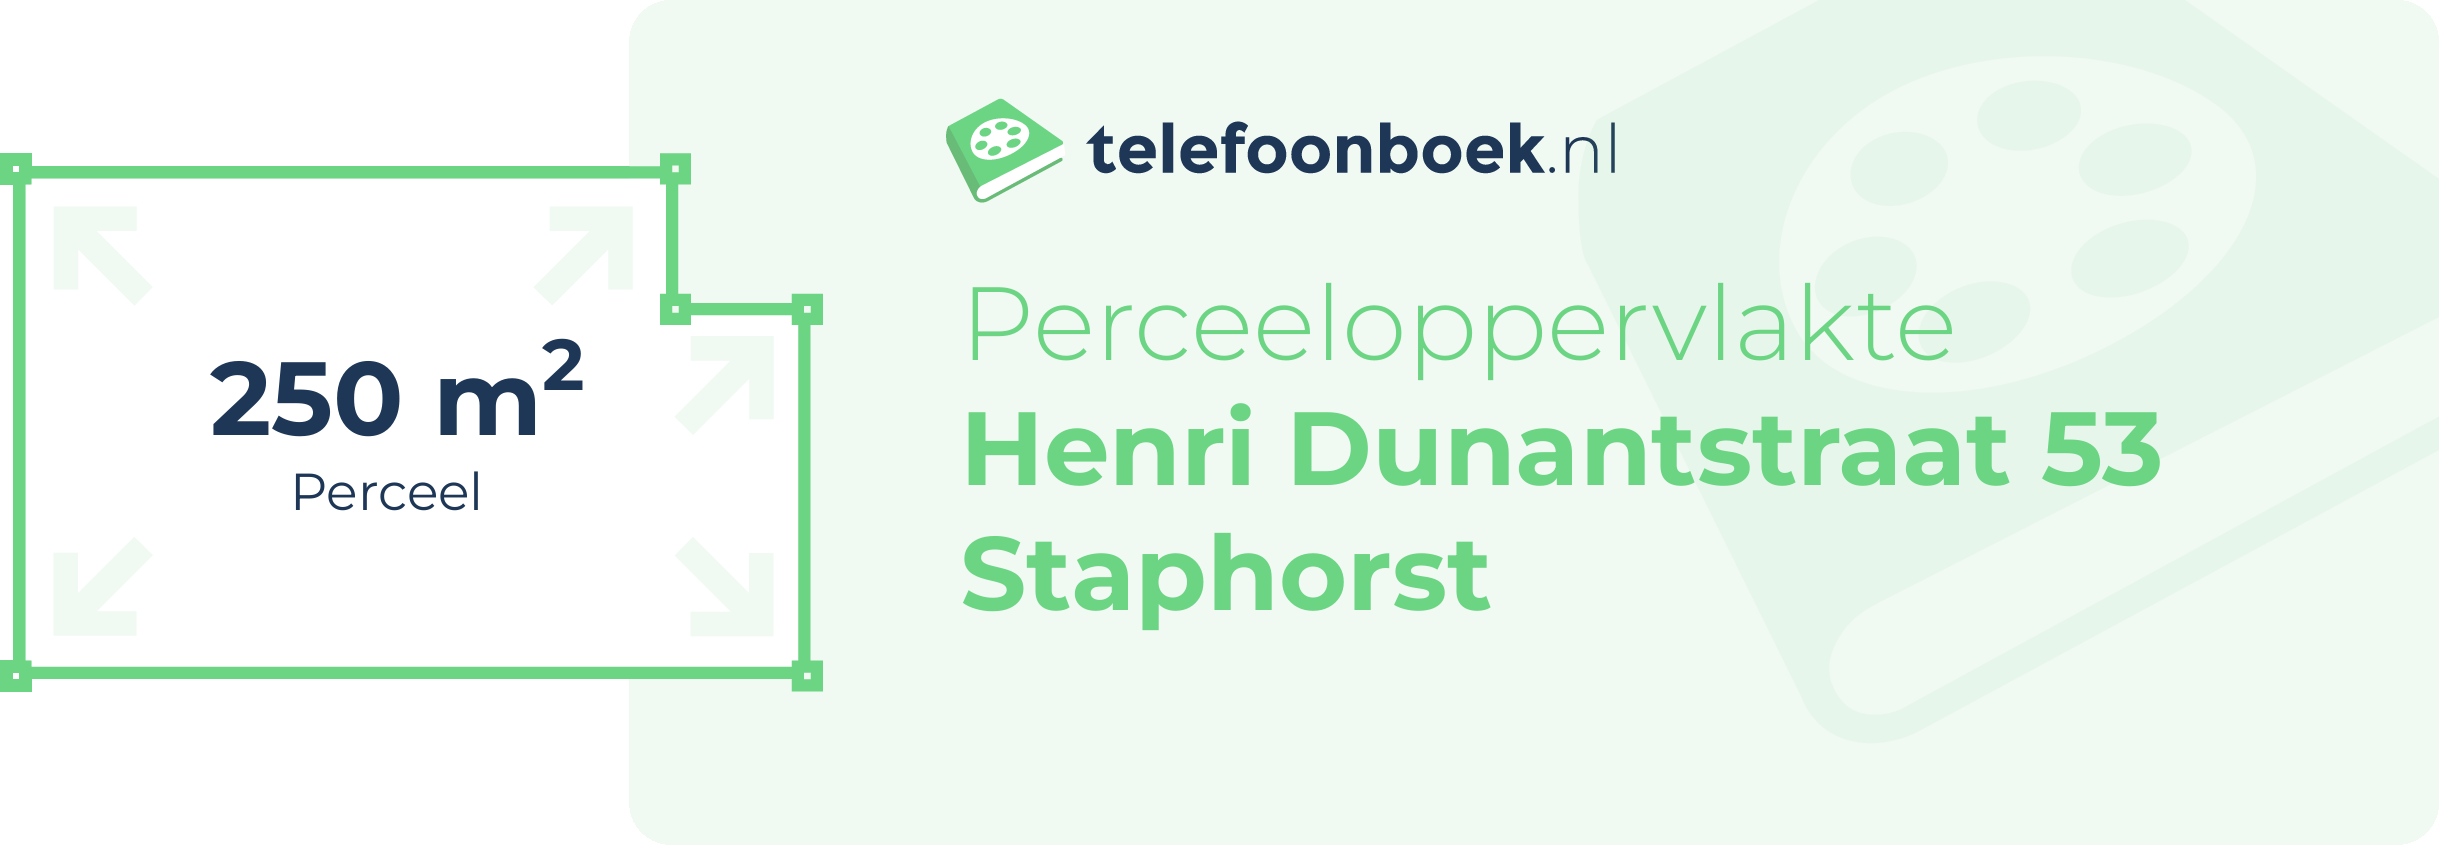 Perceeloppervlakte Henri Dunantstraat 53 Staphorst